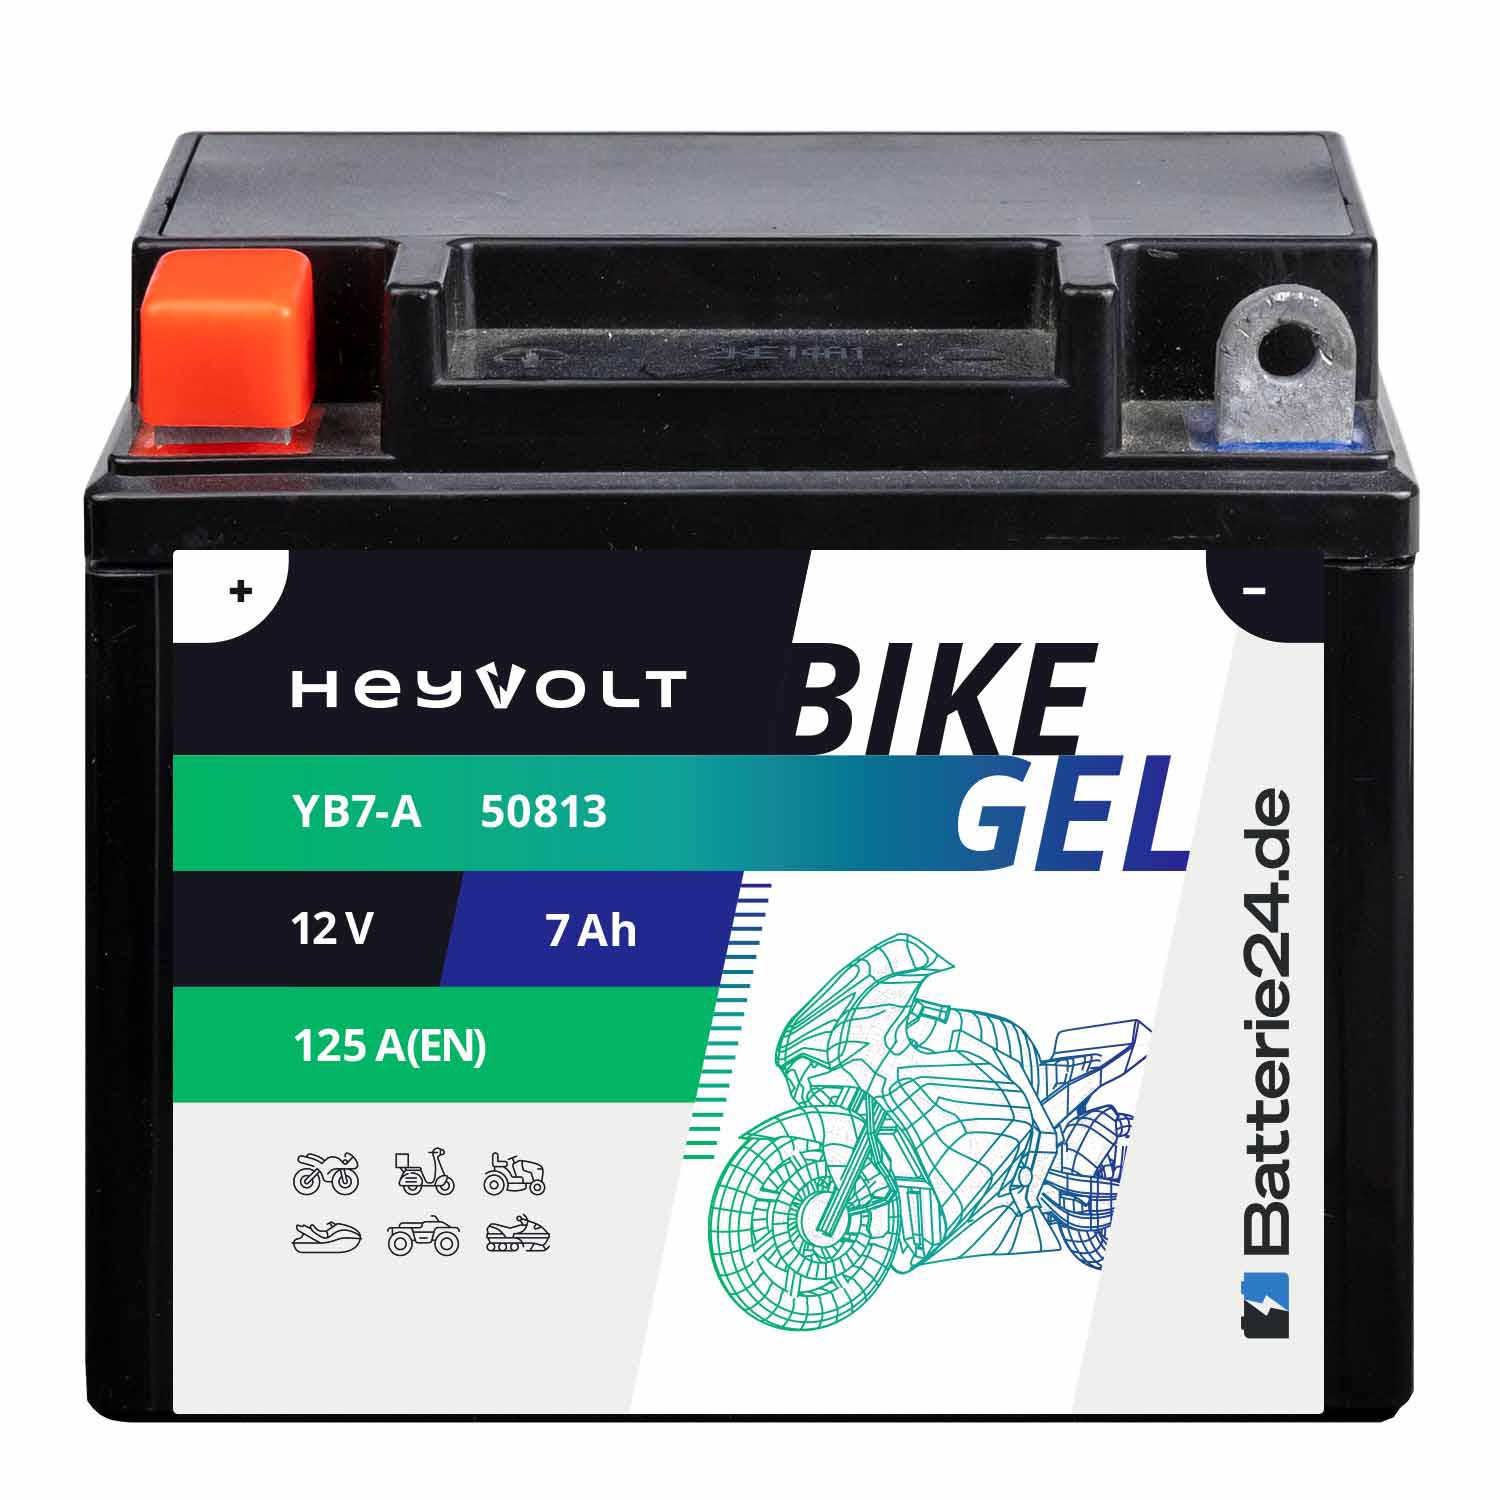 HeyVolt BIKE GEL Motorradbatterie YB7-A 50813 12V 7Ah